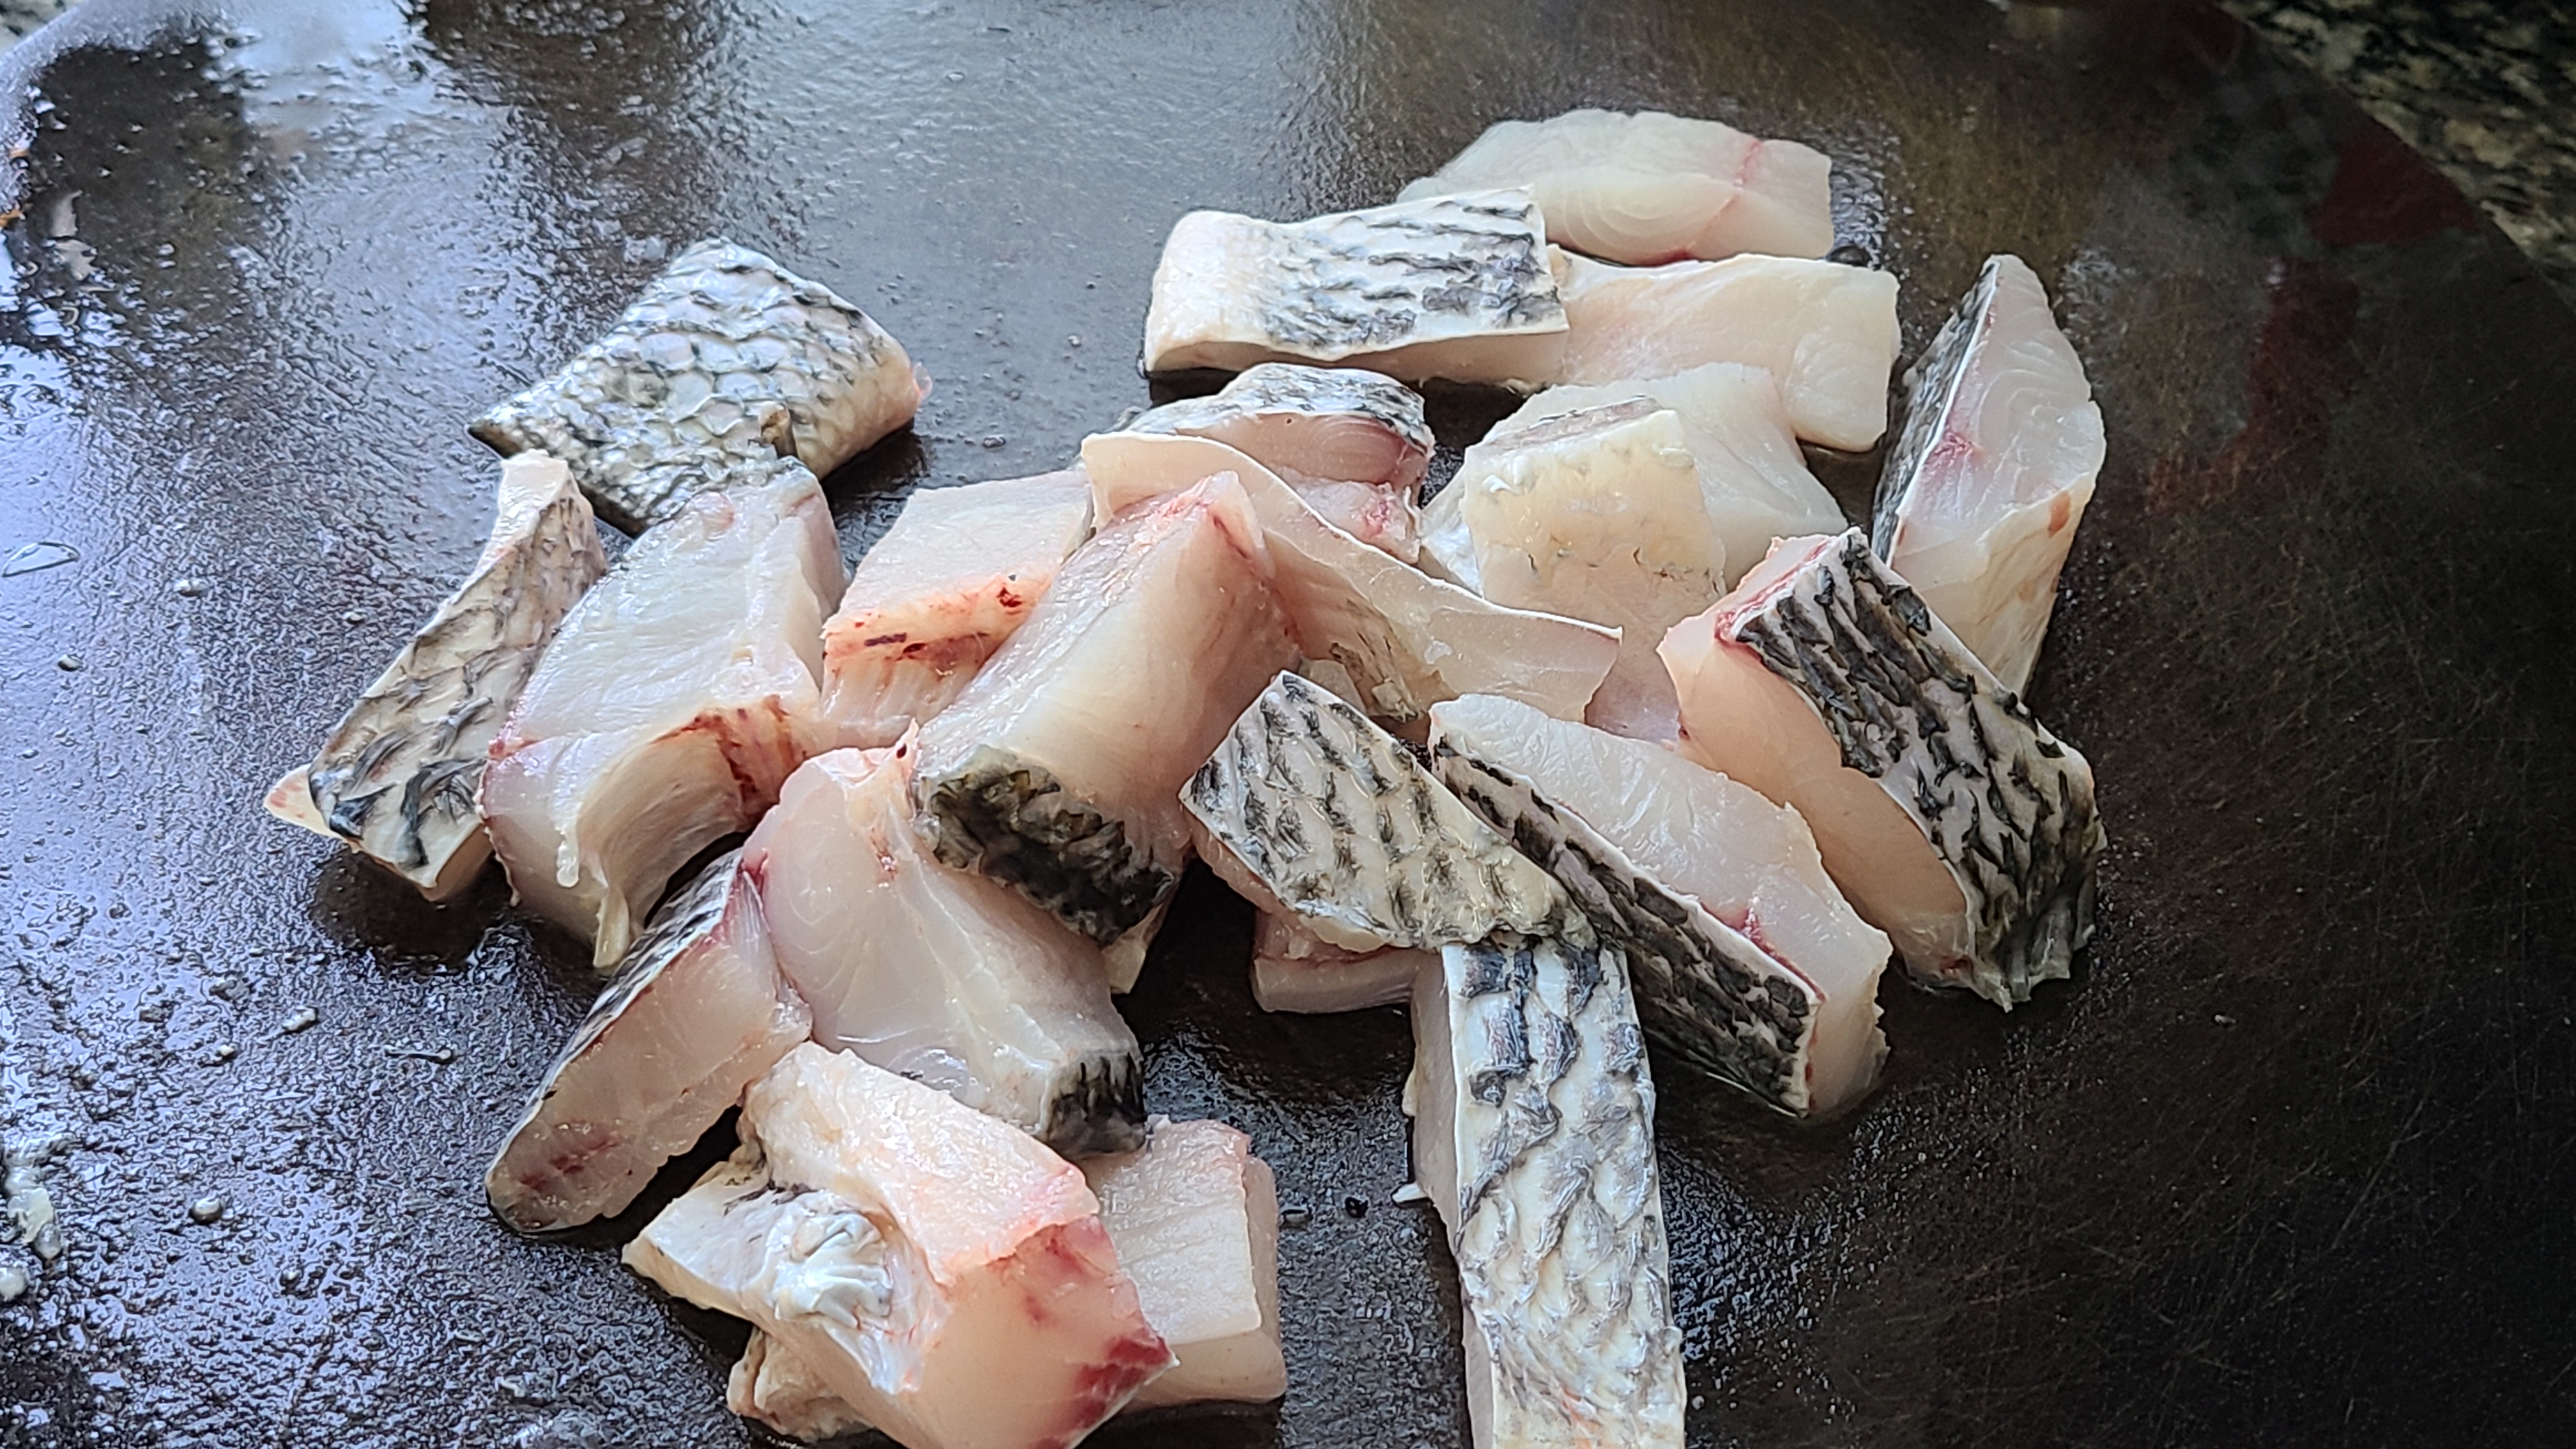 罗非鱼的广东做法，简单营养又好吃，出锅香喷喷的看着就想吃